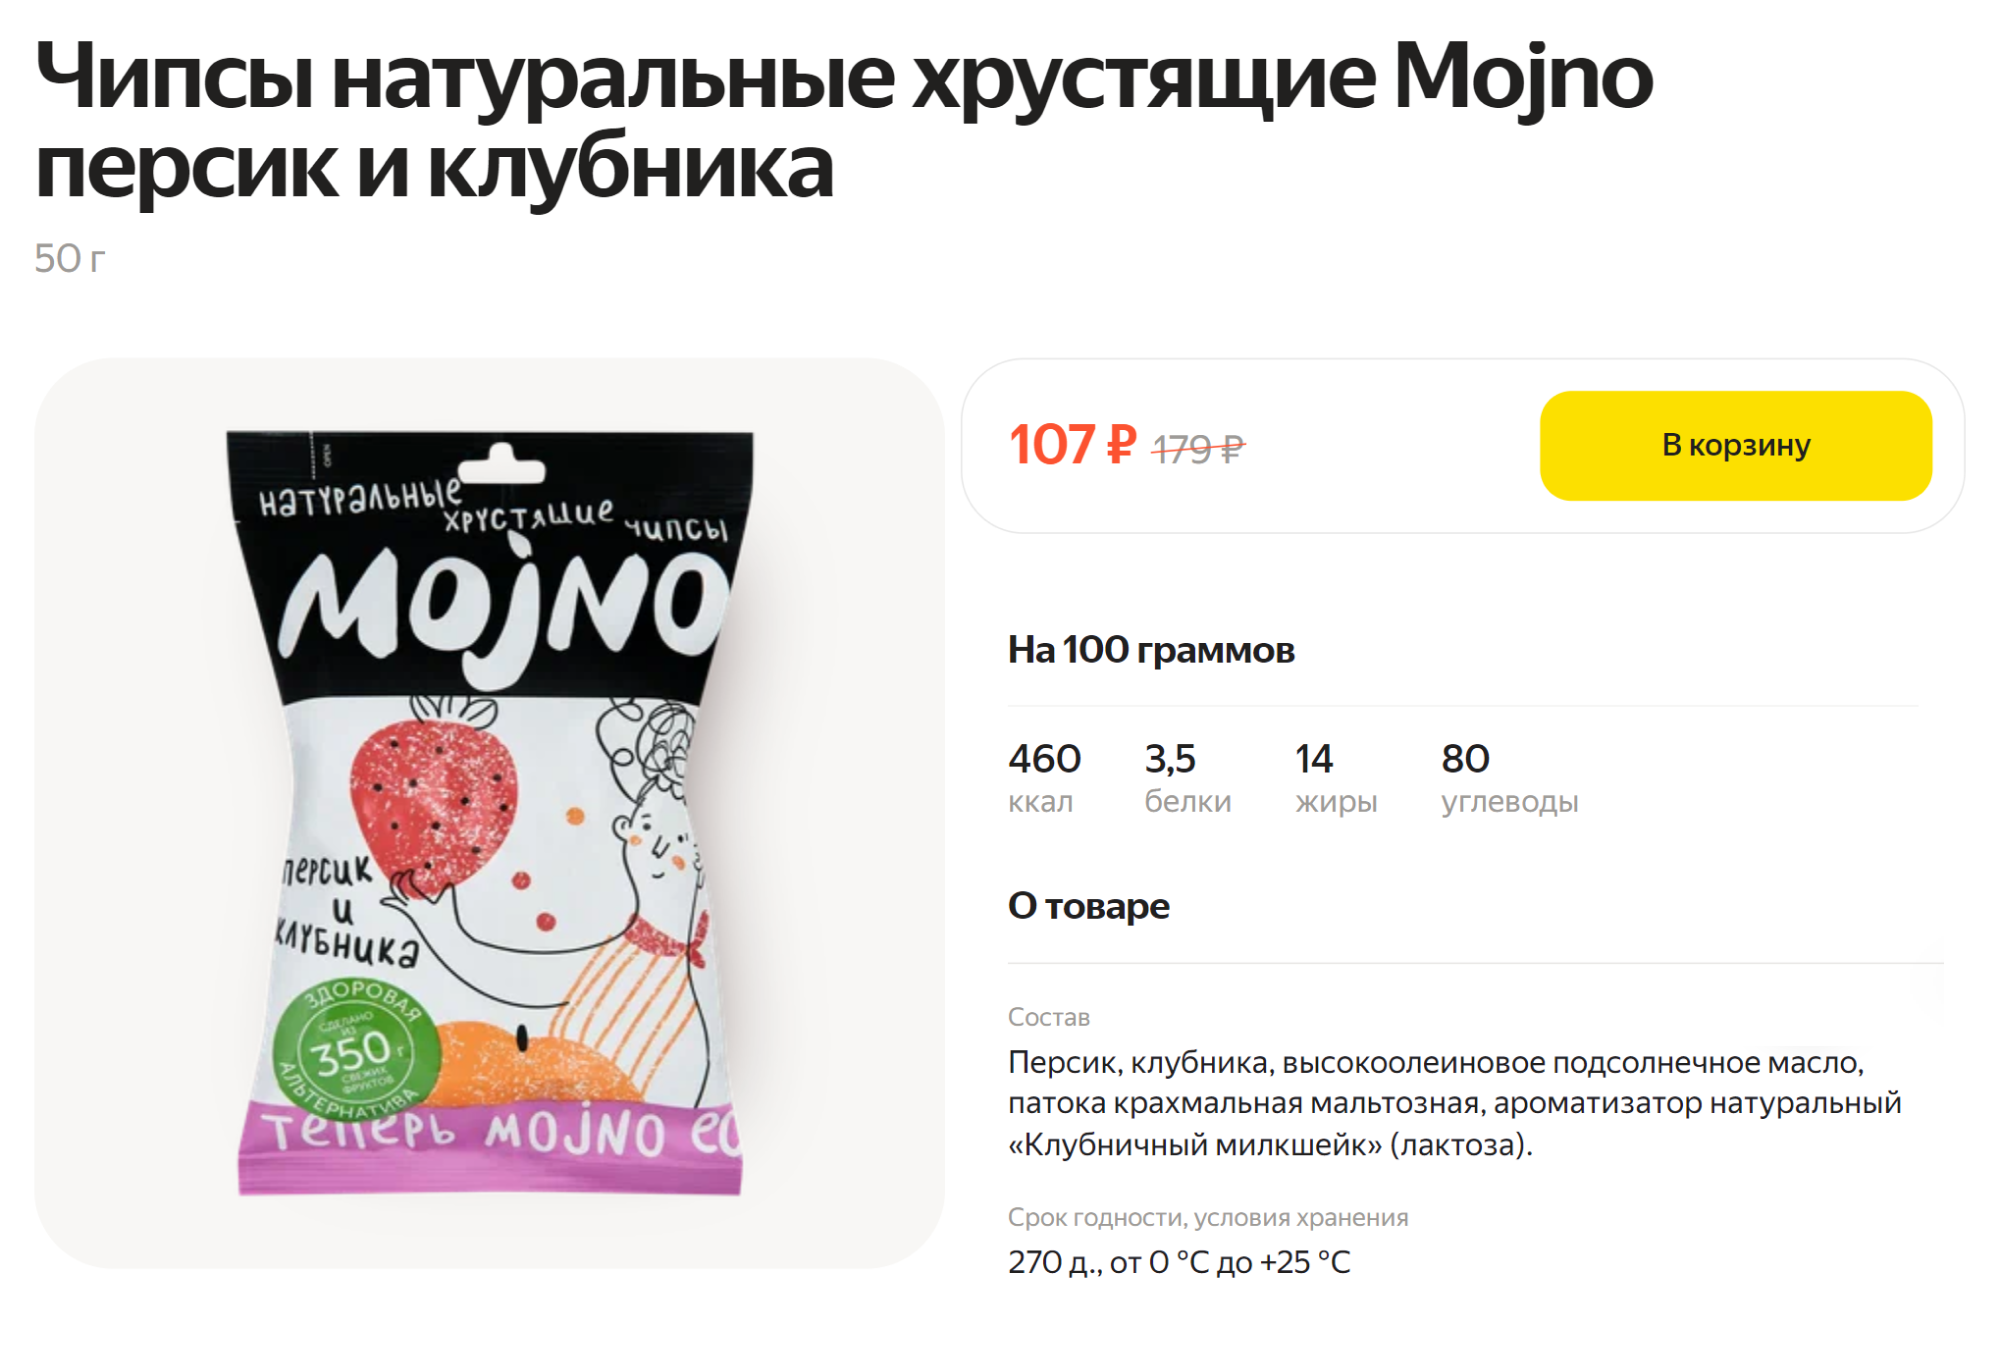 А здесь в составе есть патока — побочный продукт при производстве сахара. Источник: lavka.yandex.ru